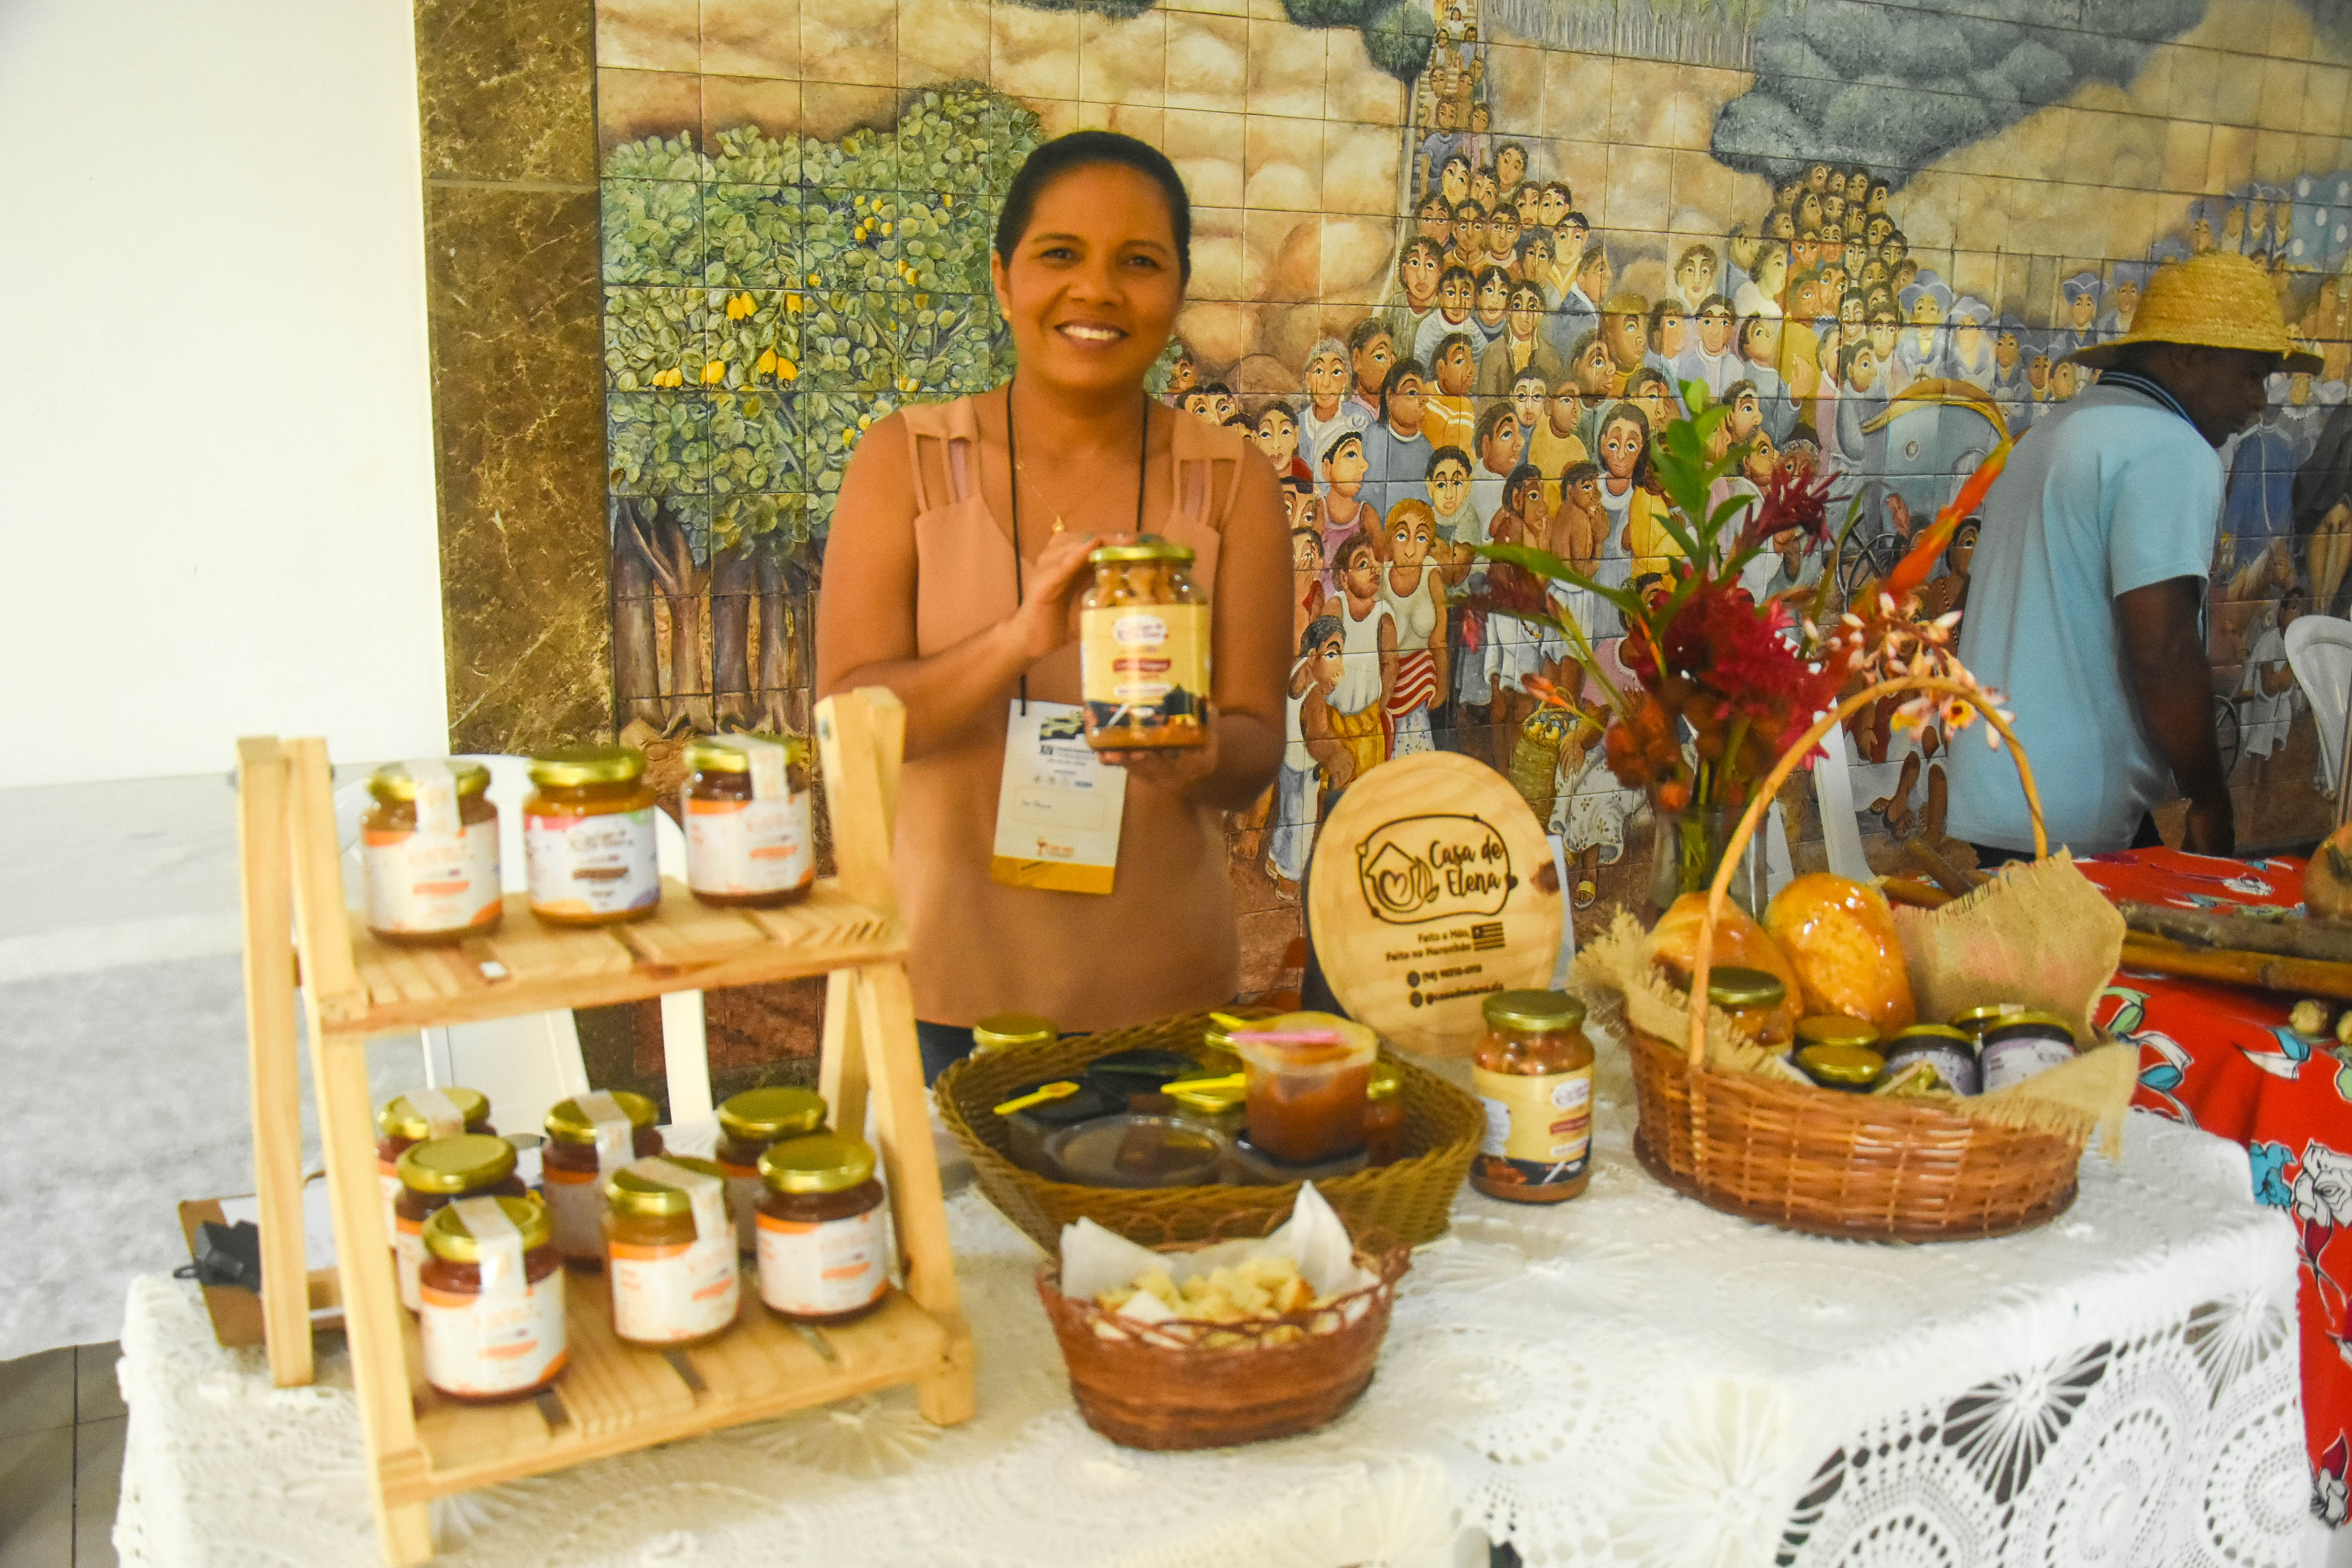 XIV Simpósio Brasileiro de Farmacognosia na UFMA conta com exposição de produtos de comunidades tradicionais